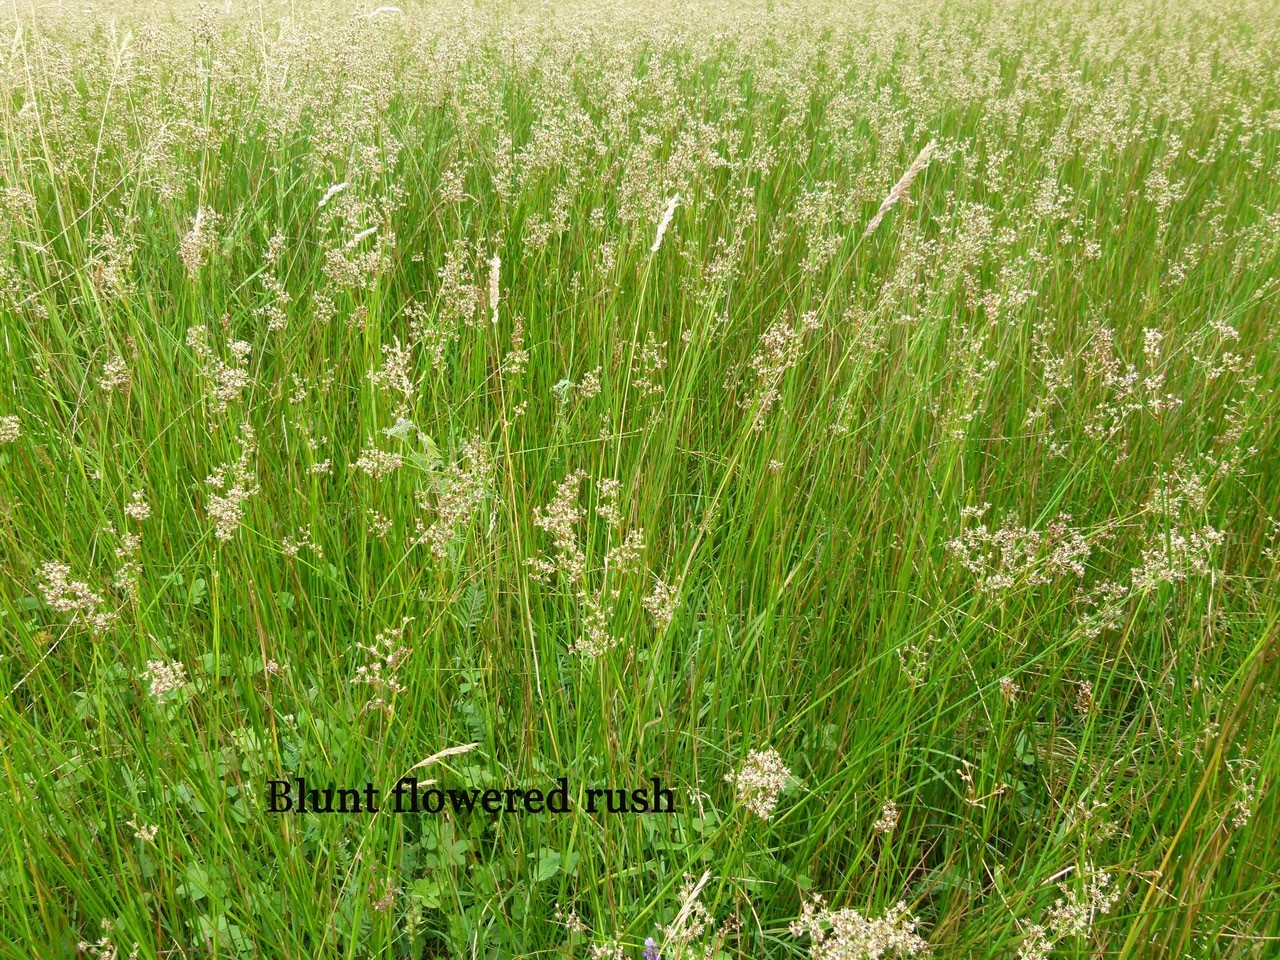 Blunt- flowered Rush (Juncus subnodulous), Shropshire.